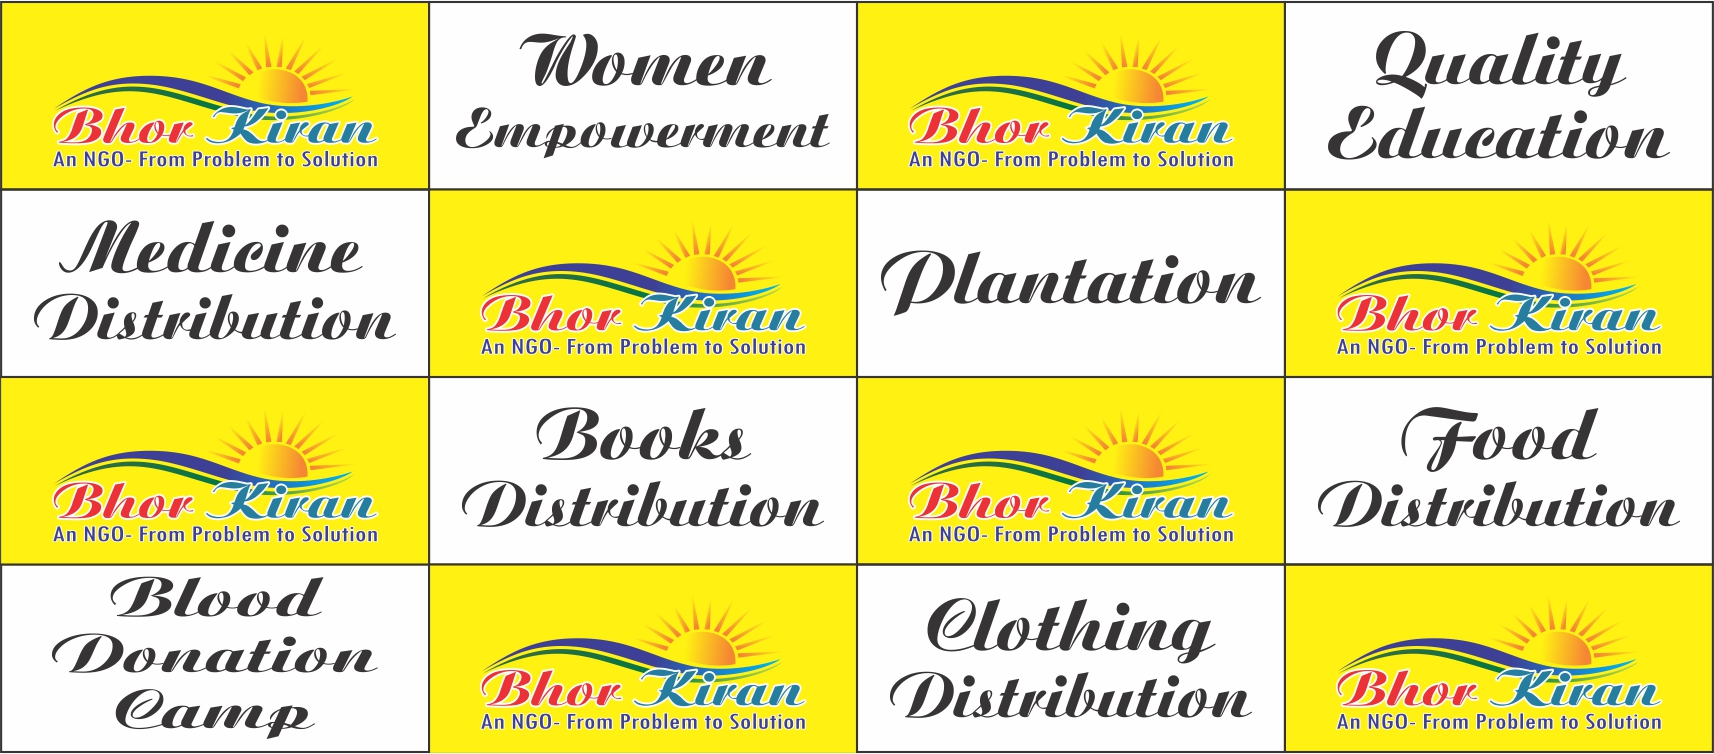 Bhor Kiran - an NGO